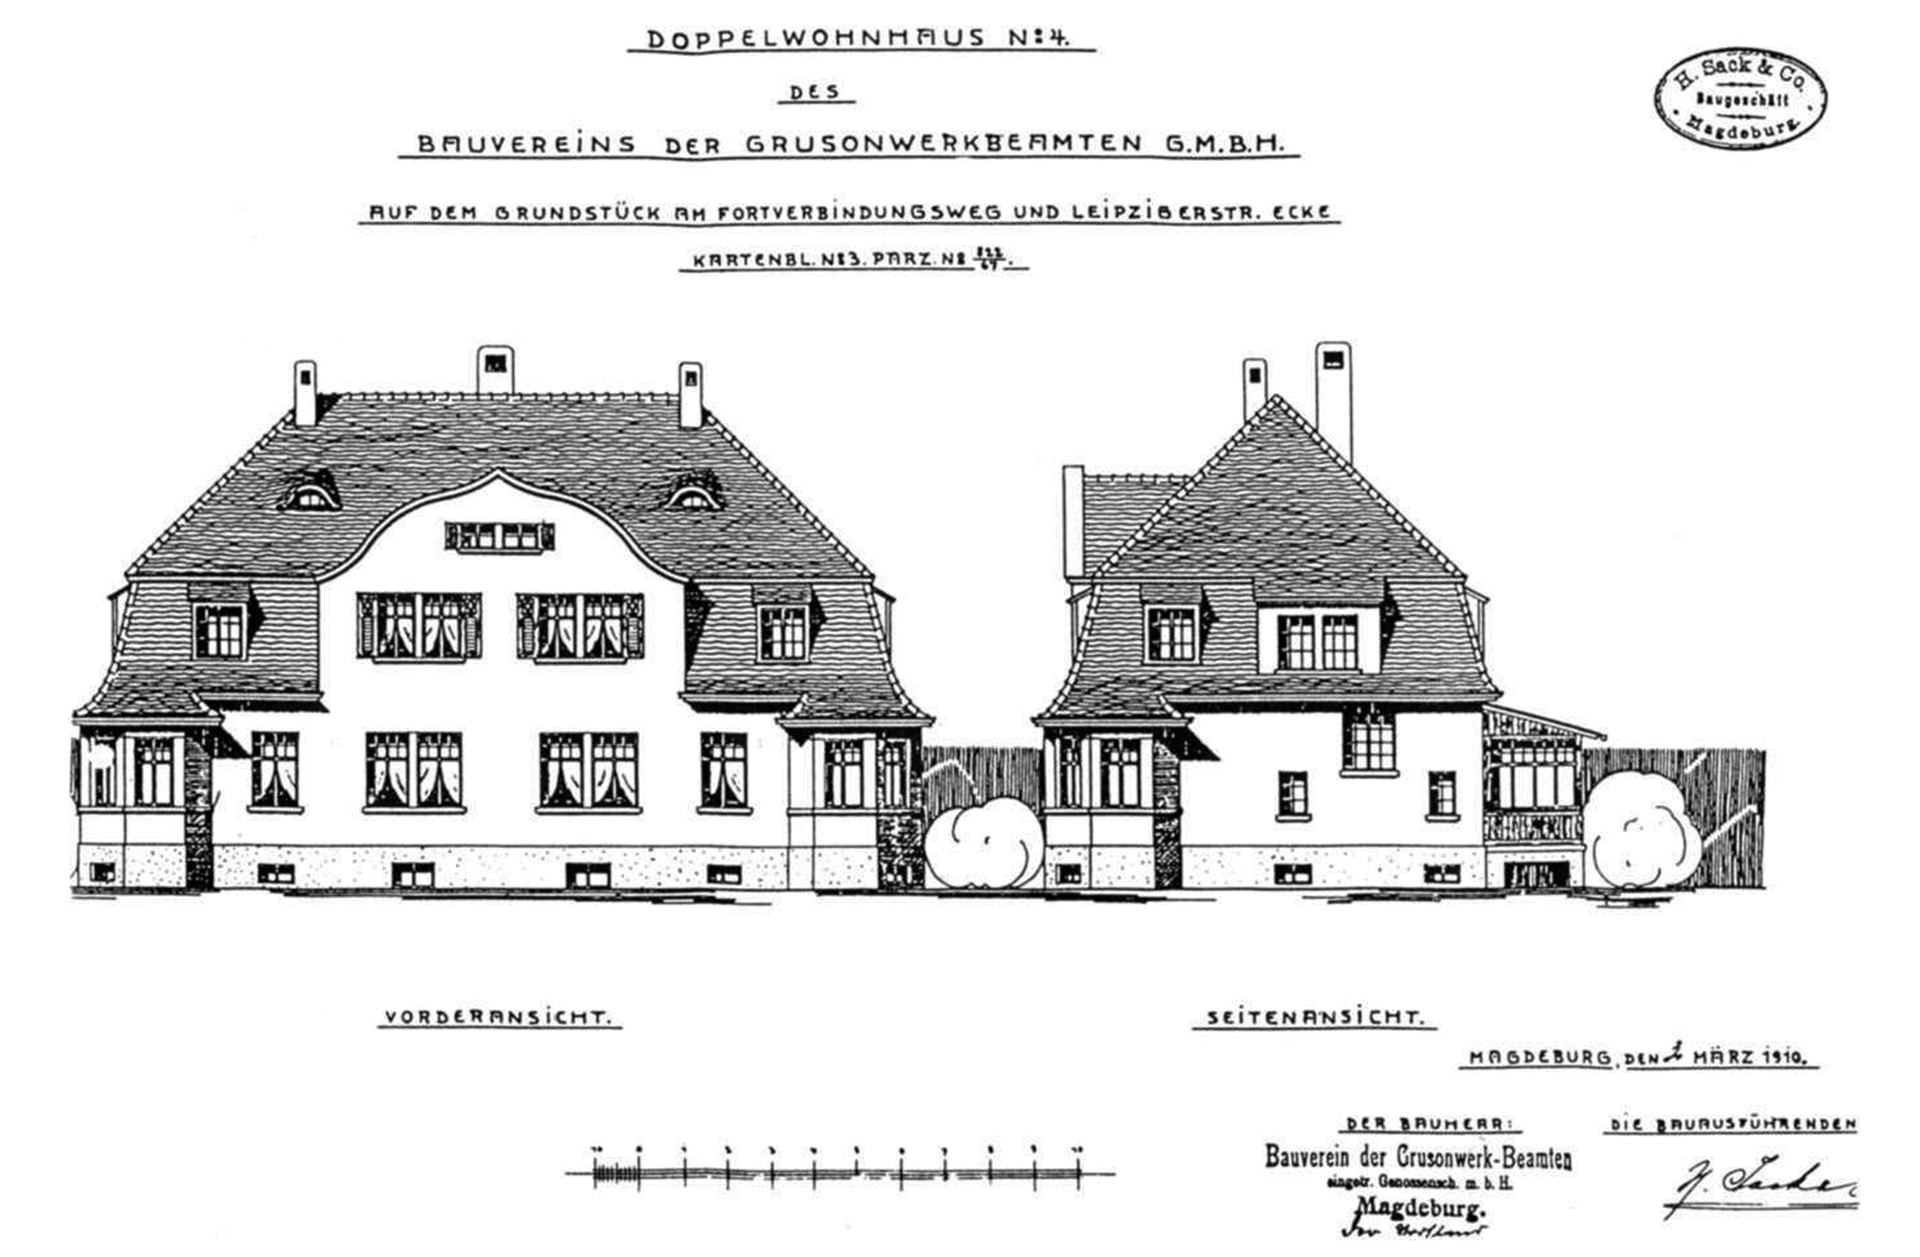 Abb. 6: Entwurf für ein Doppelwohnhaus für Grusonwerk-Beamte